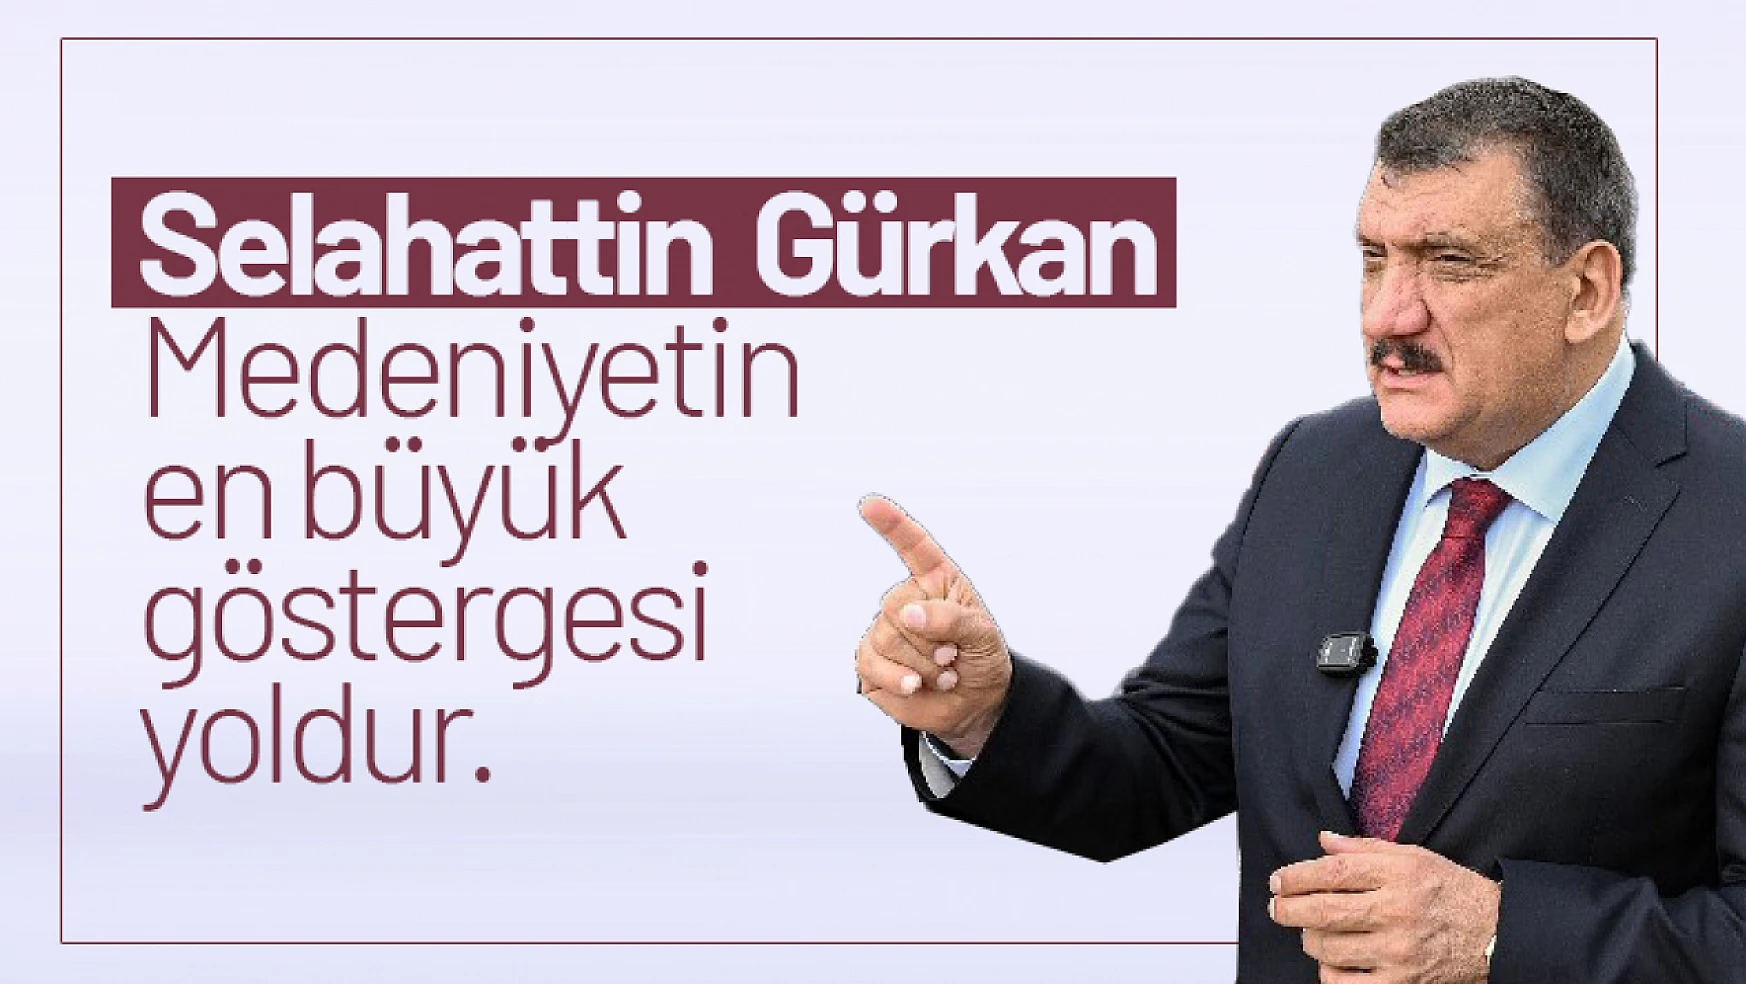 Gürkan: Medeniyetin en büyük göstergesi yoldur.